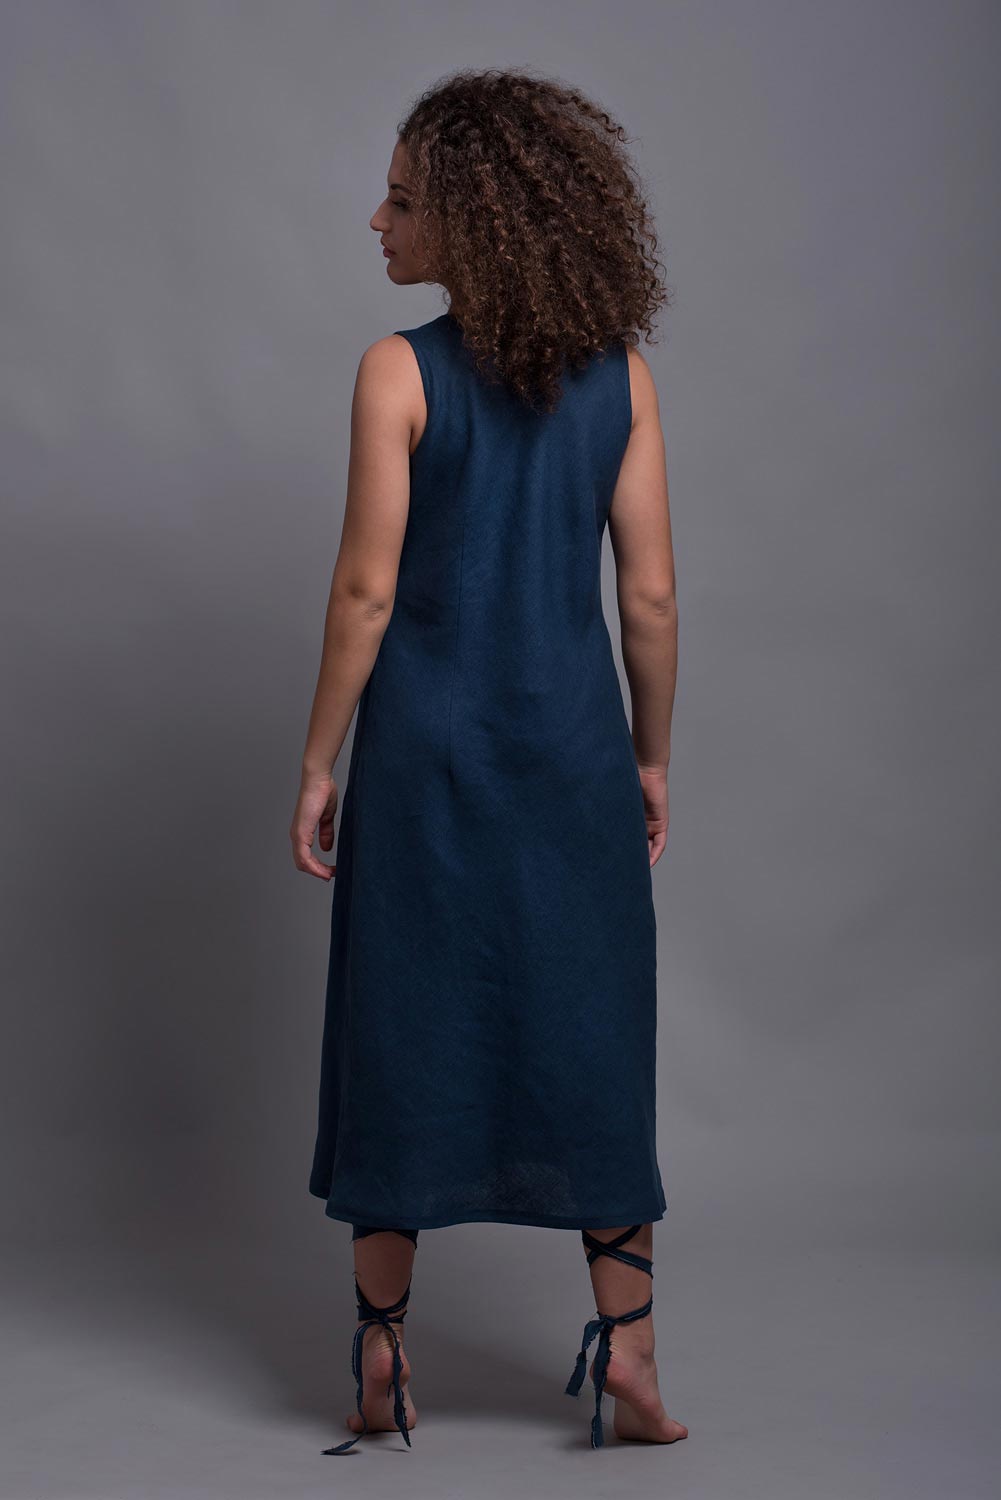 Bias Cut Long Linen Dress, Buy Flax Linen Dresses Online